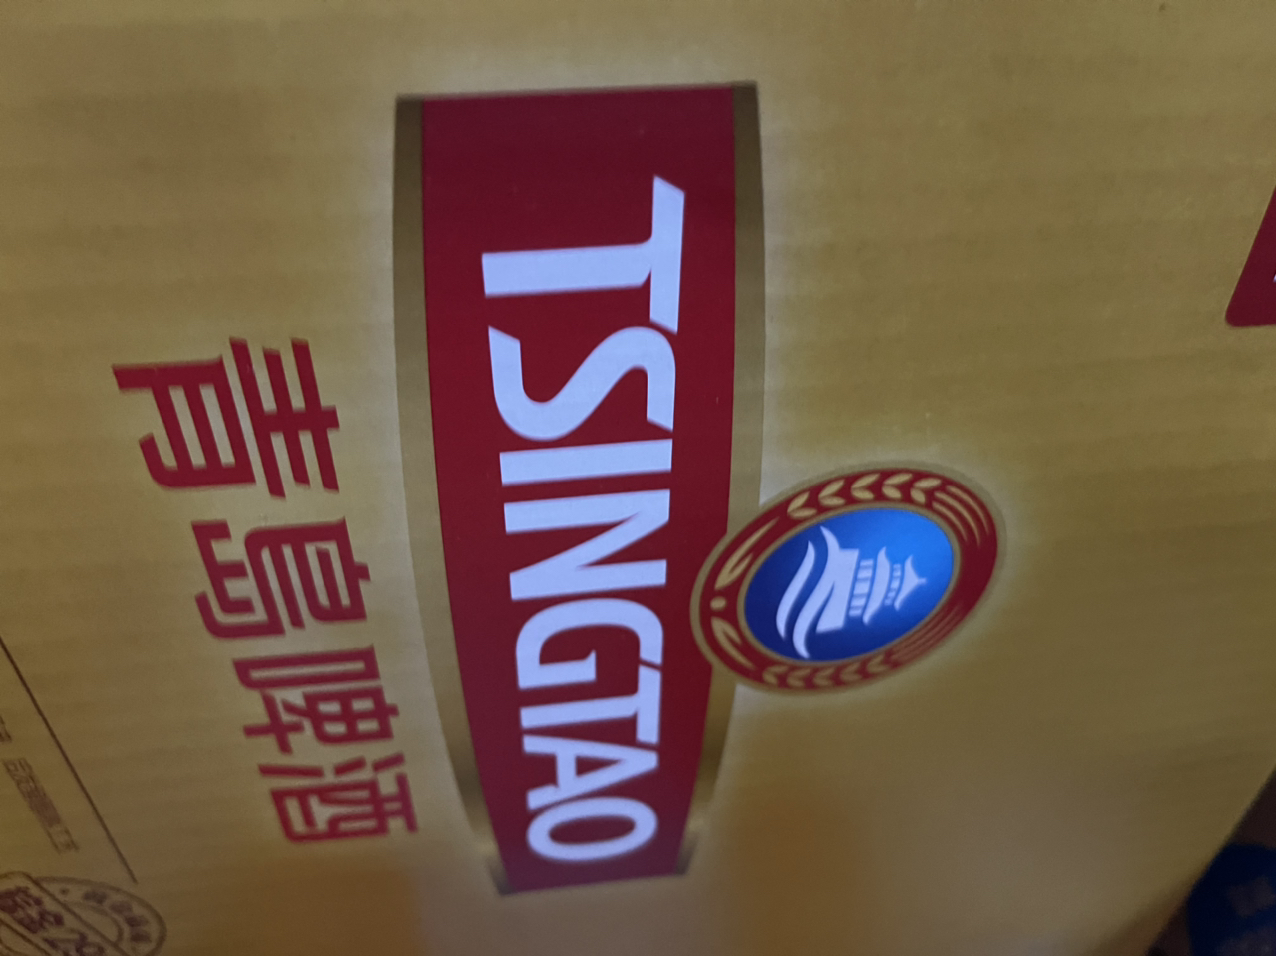 青岛啤酒(TSINGTAO)小棕金 11度 296ml*24瓶(ZB1)晒单图